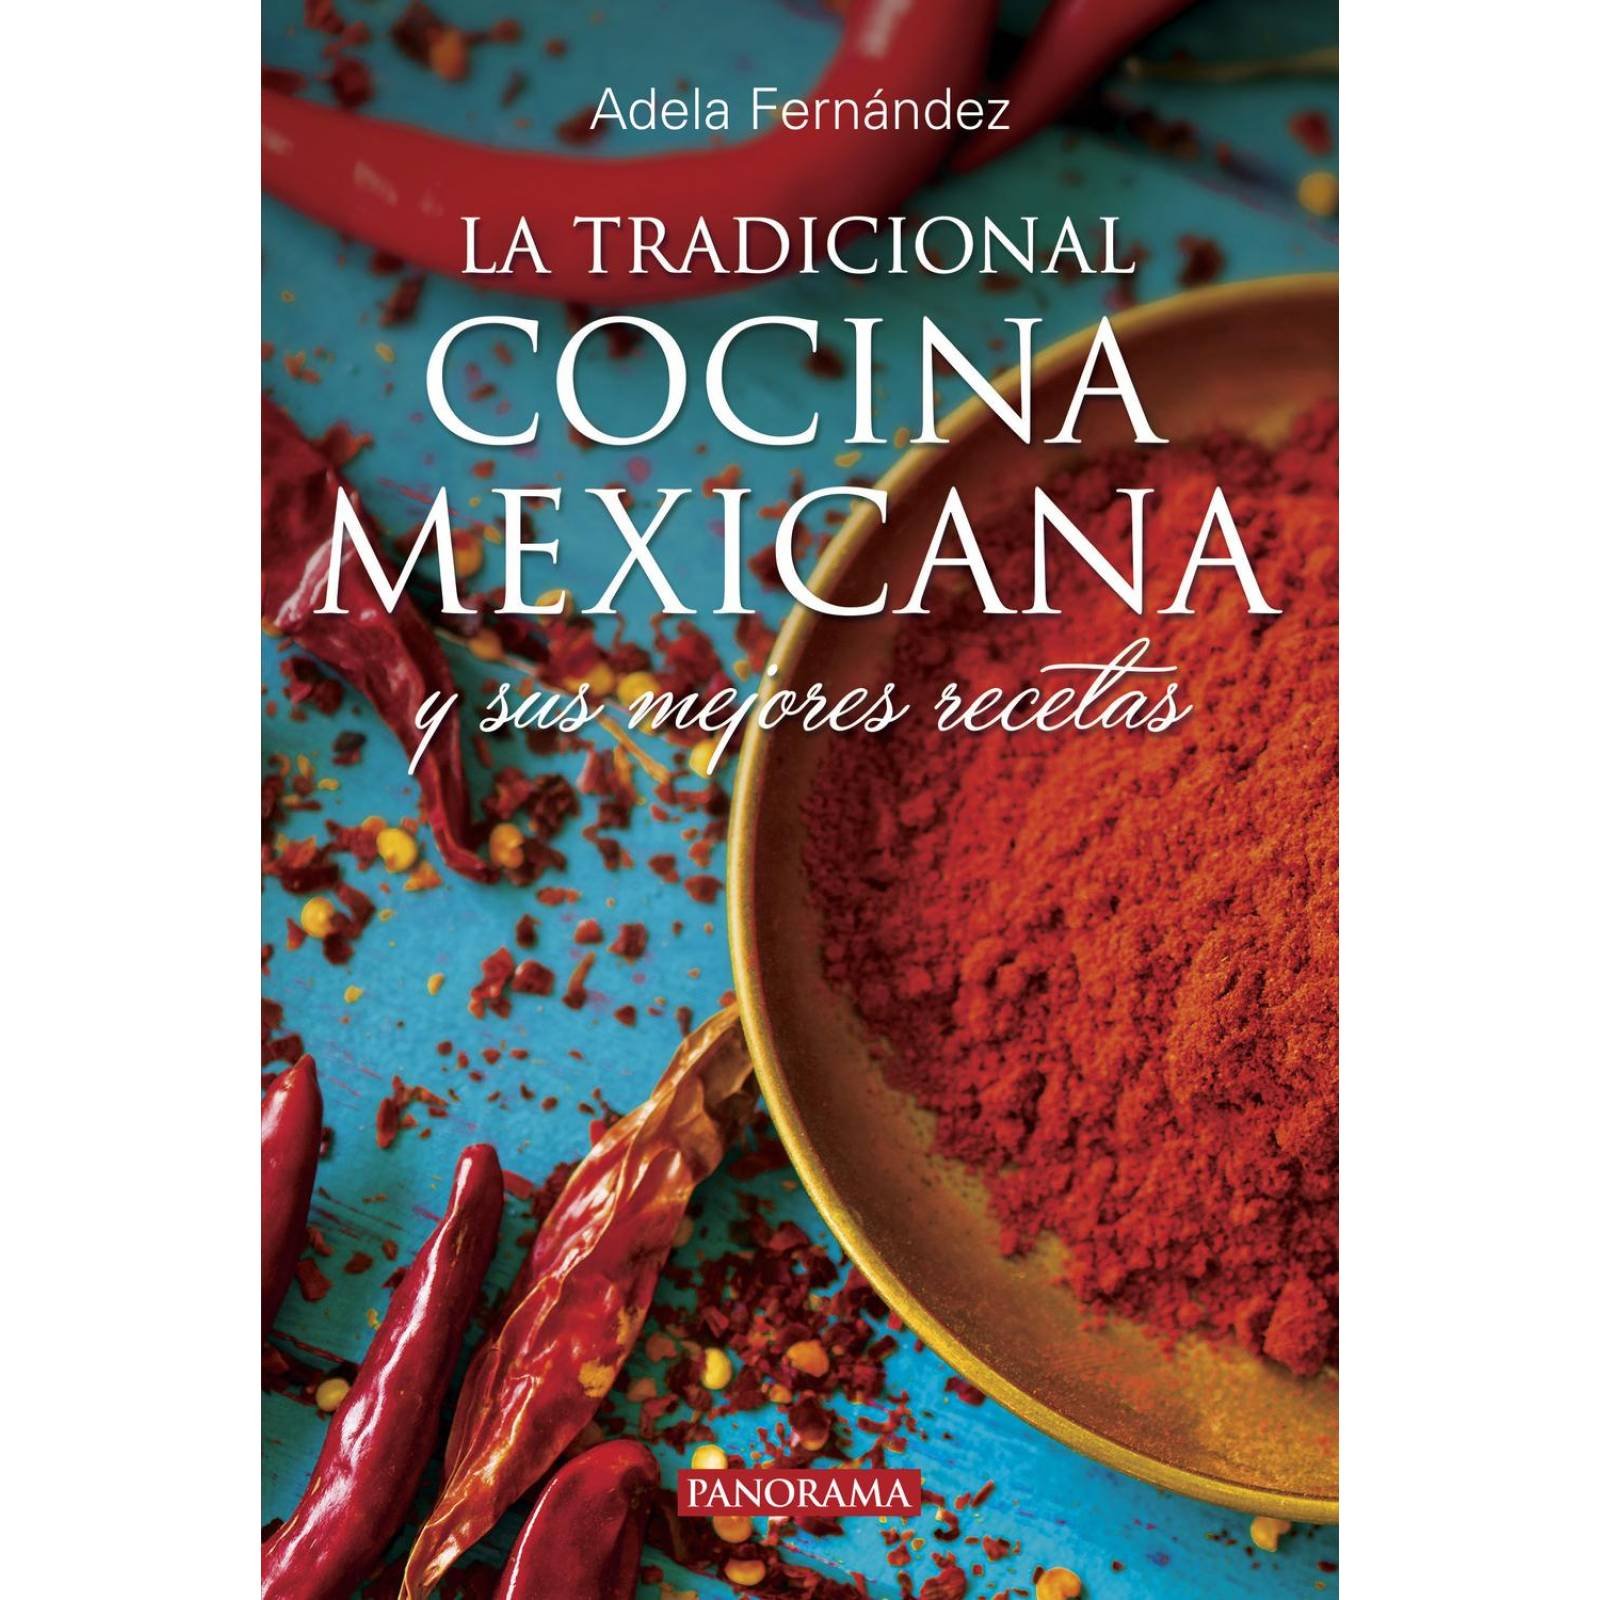 La Tradicional cocina mexicana Nueva edición 